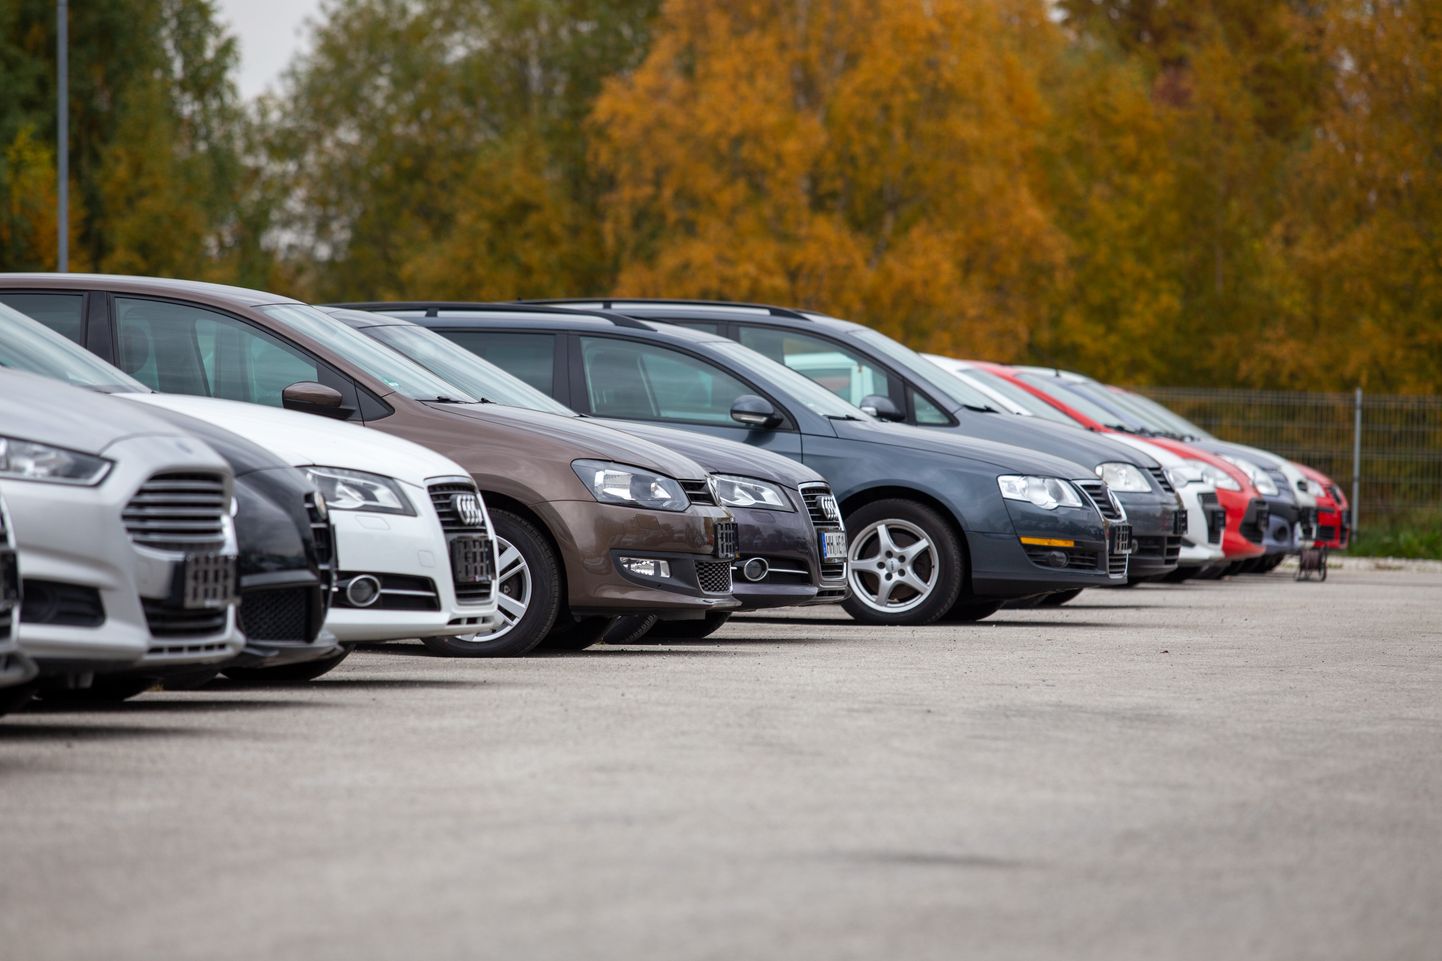 Bigbank Eestis on käesoleva aasta algusest väljaantud autolaenude maht 40 protsenti kõrgem võrreldes viimase kolme aasta keskmisega ning 30 protsenti kõrgem võrreldes eelmise aasta sama perioodiga.